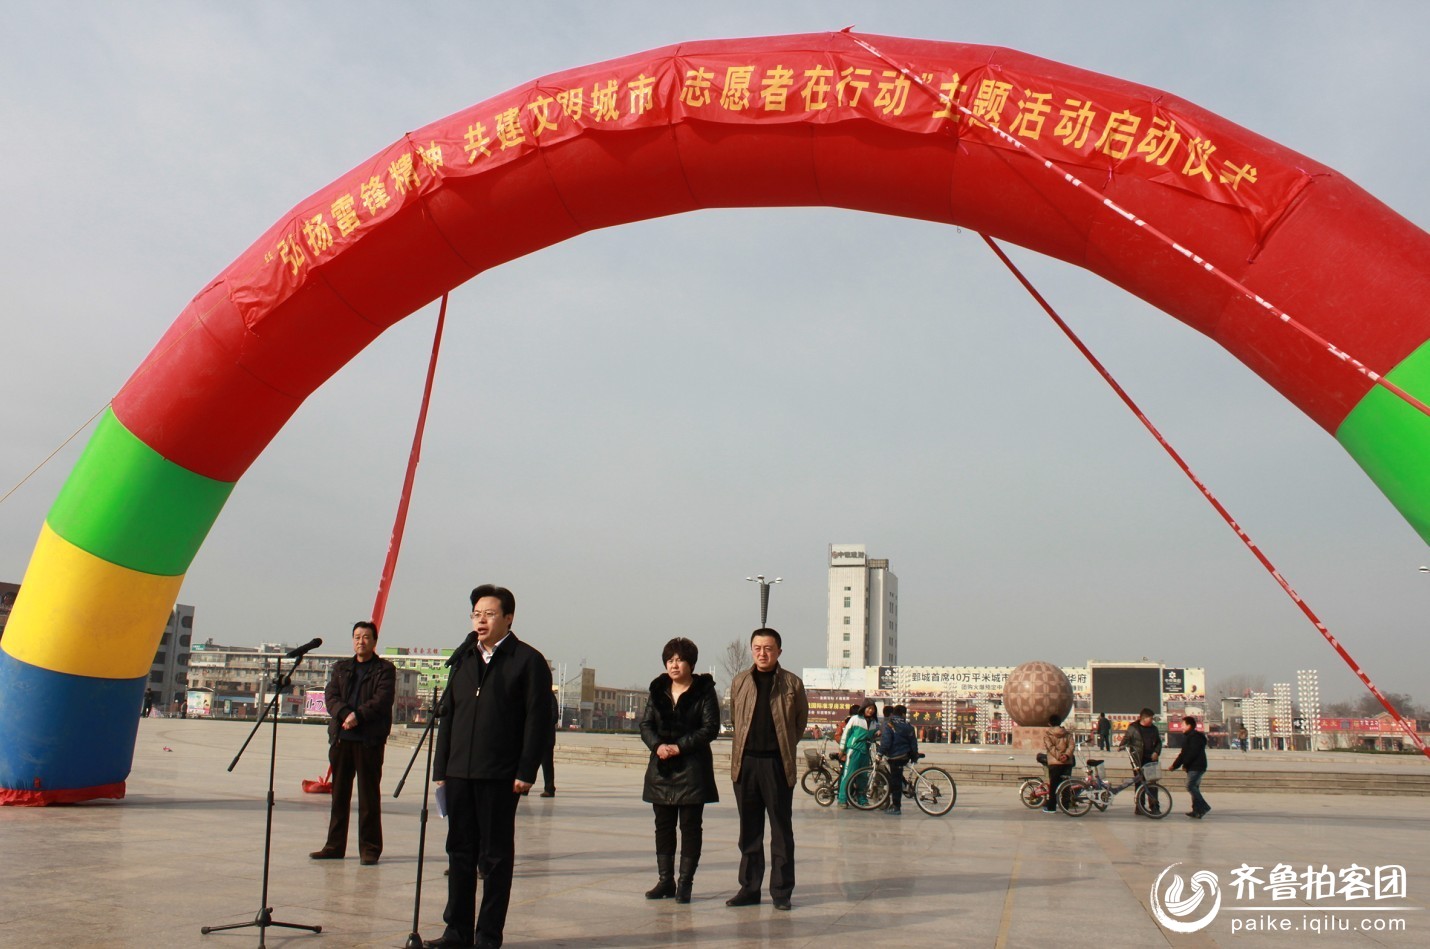 3月2日,鄄城县团县委召集县城中小学团员和少先队员,在鄄城人民广场图片